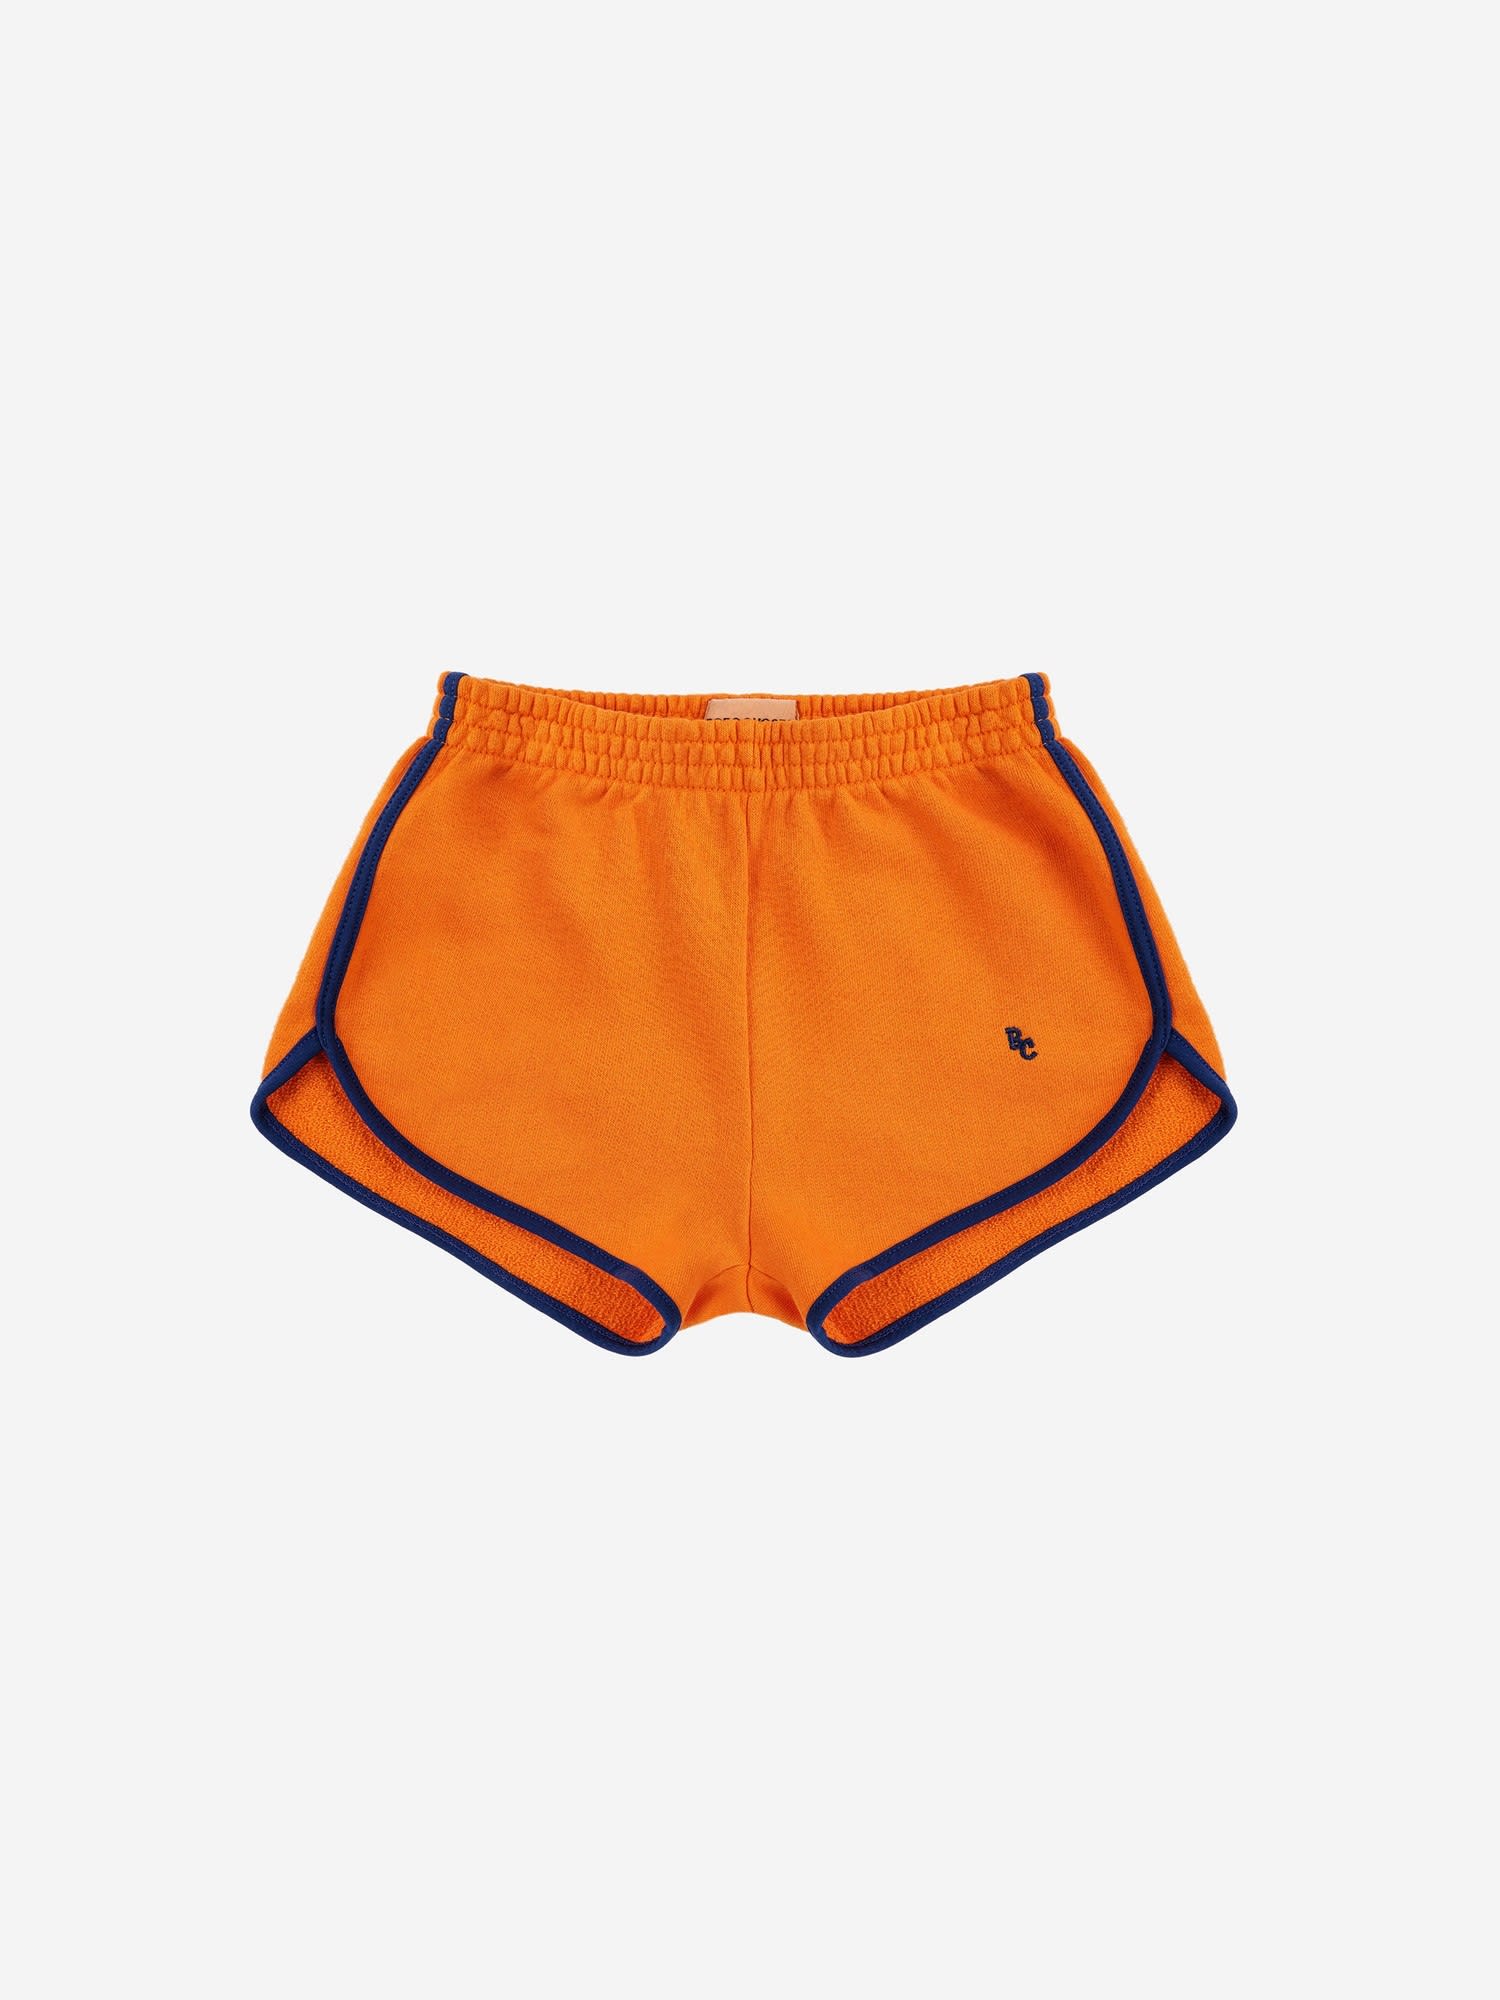 Bobo Choses Orange Shorts For Kids With Logo